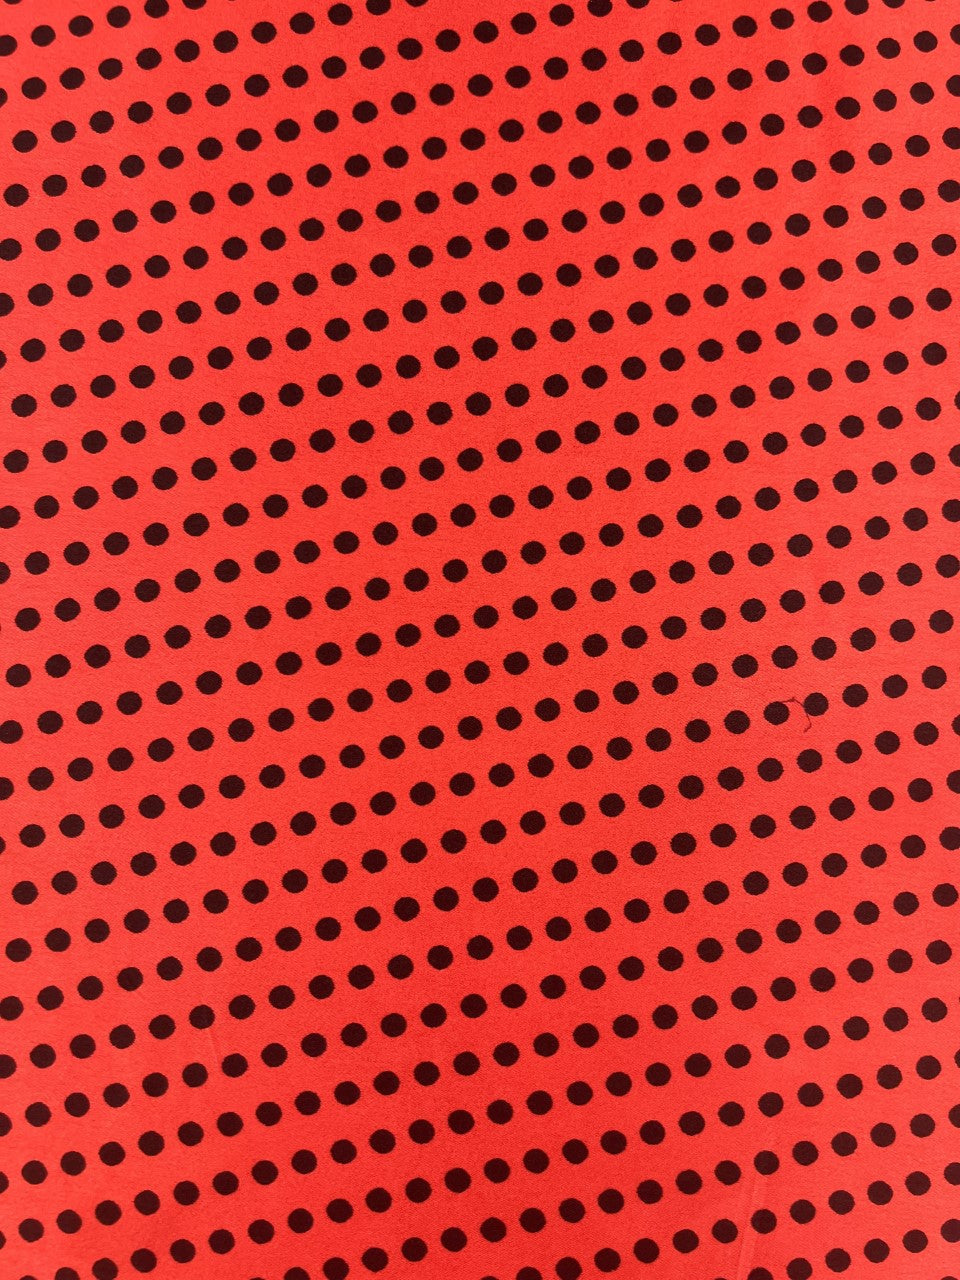 Satin Red/Black Polka Dot